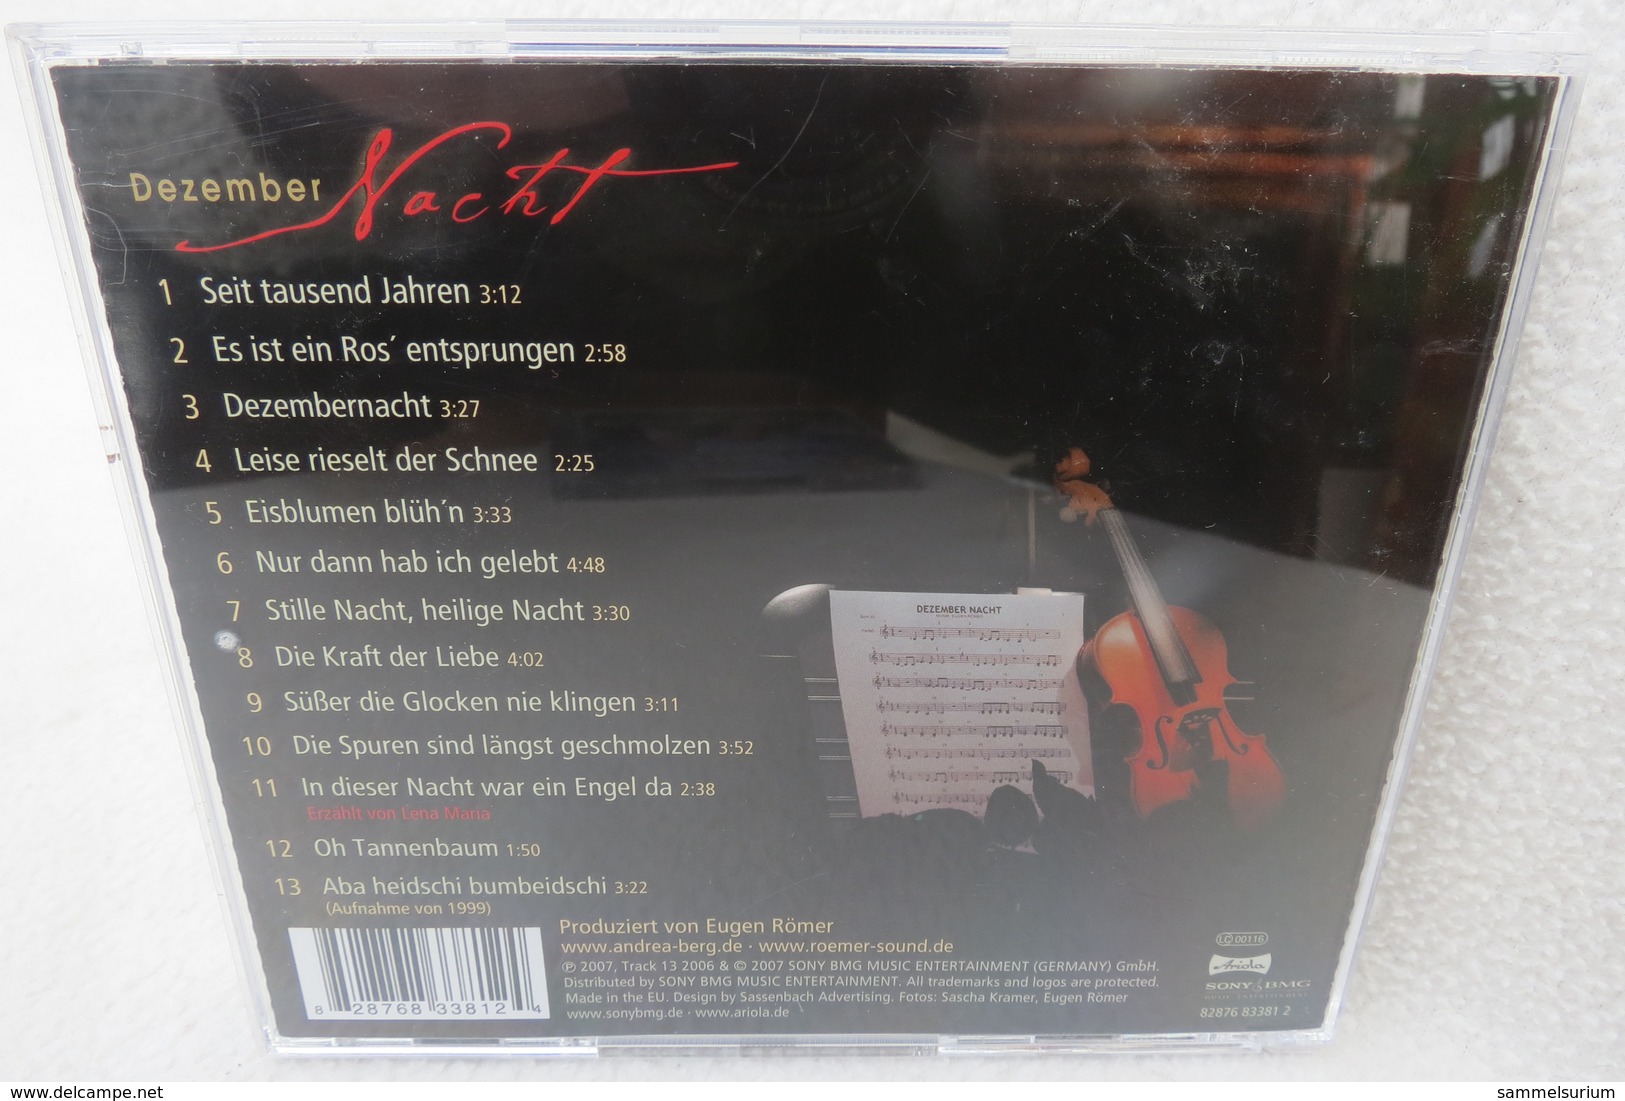 CD "Andrea Berg" Dezember Nacht - Sonstige - Deutsche Musik